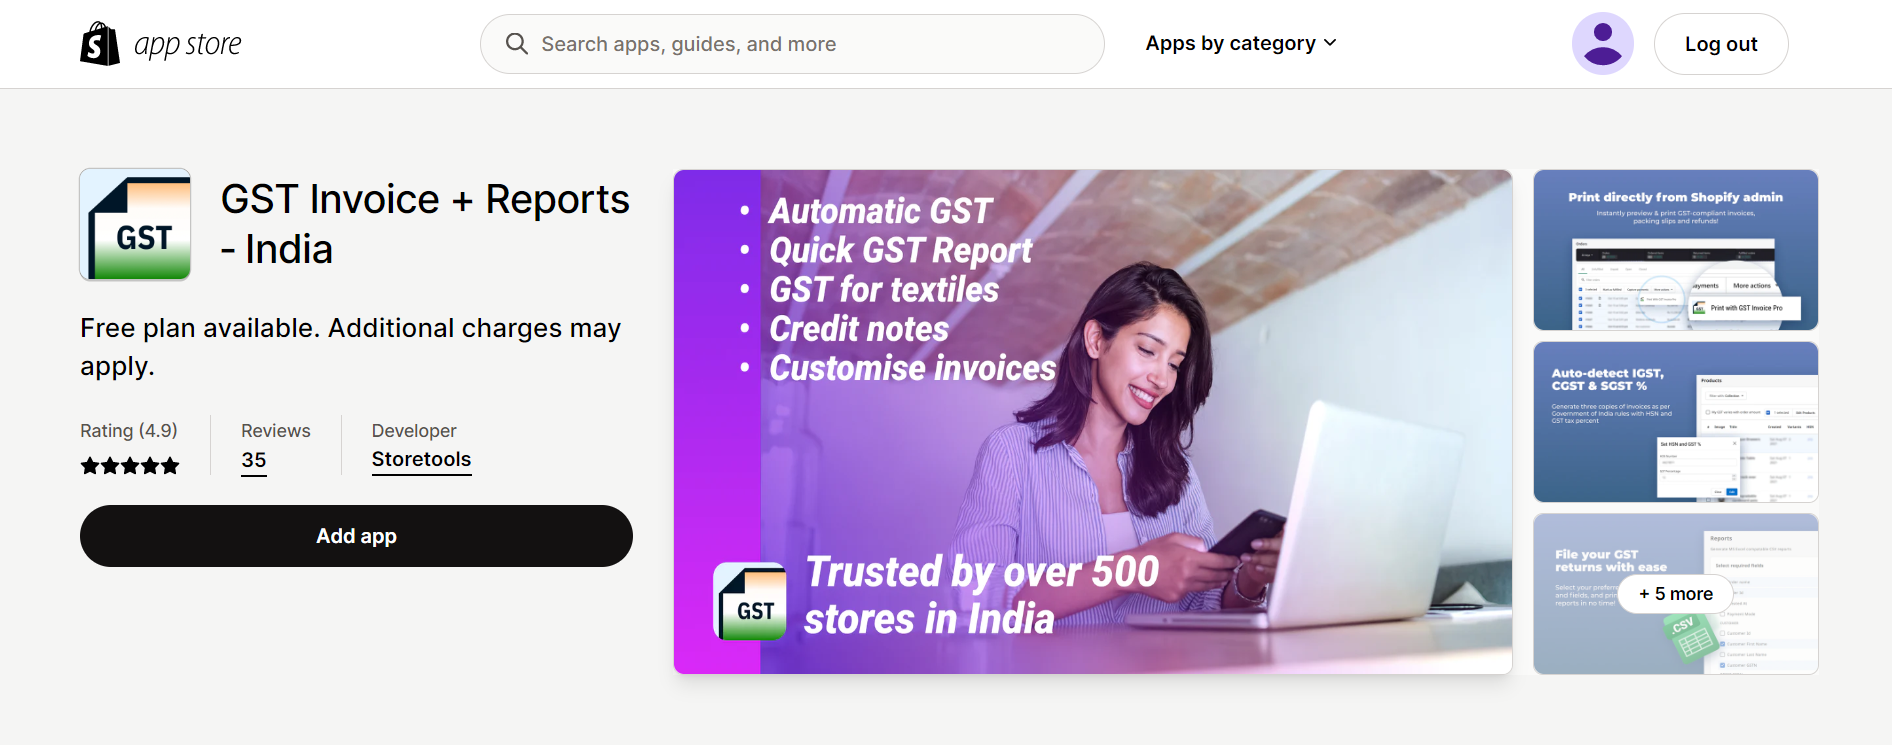 GST Invoice + Reports ‑ India